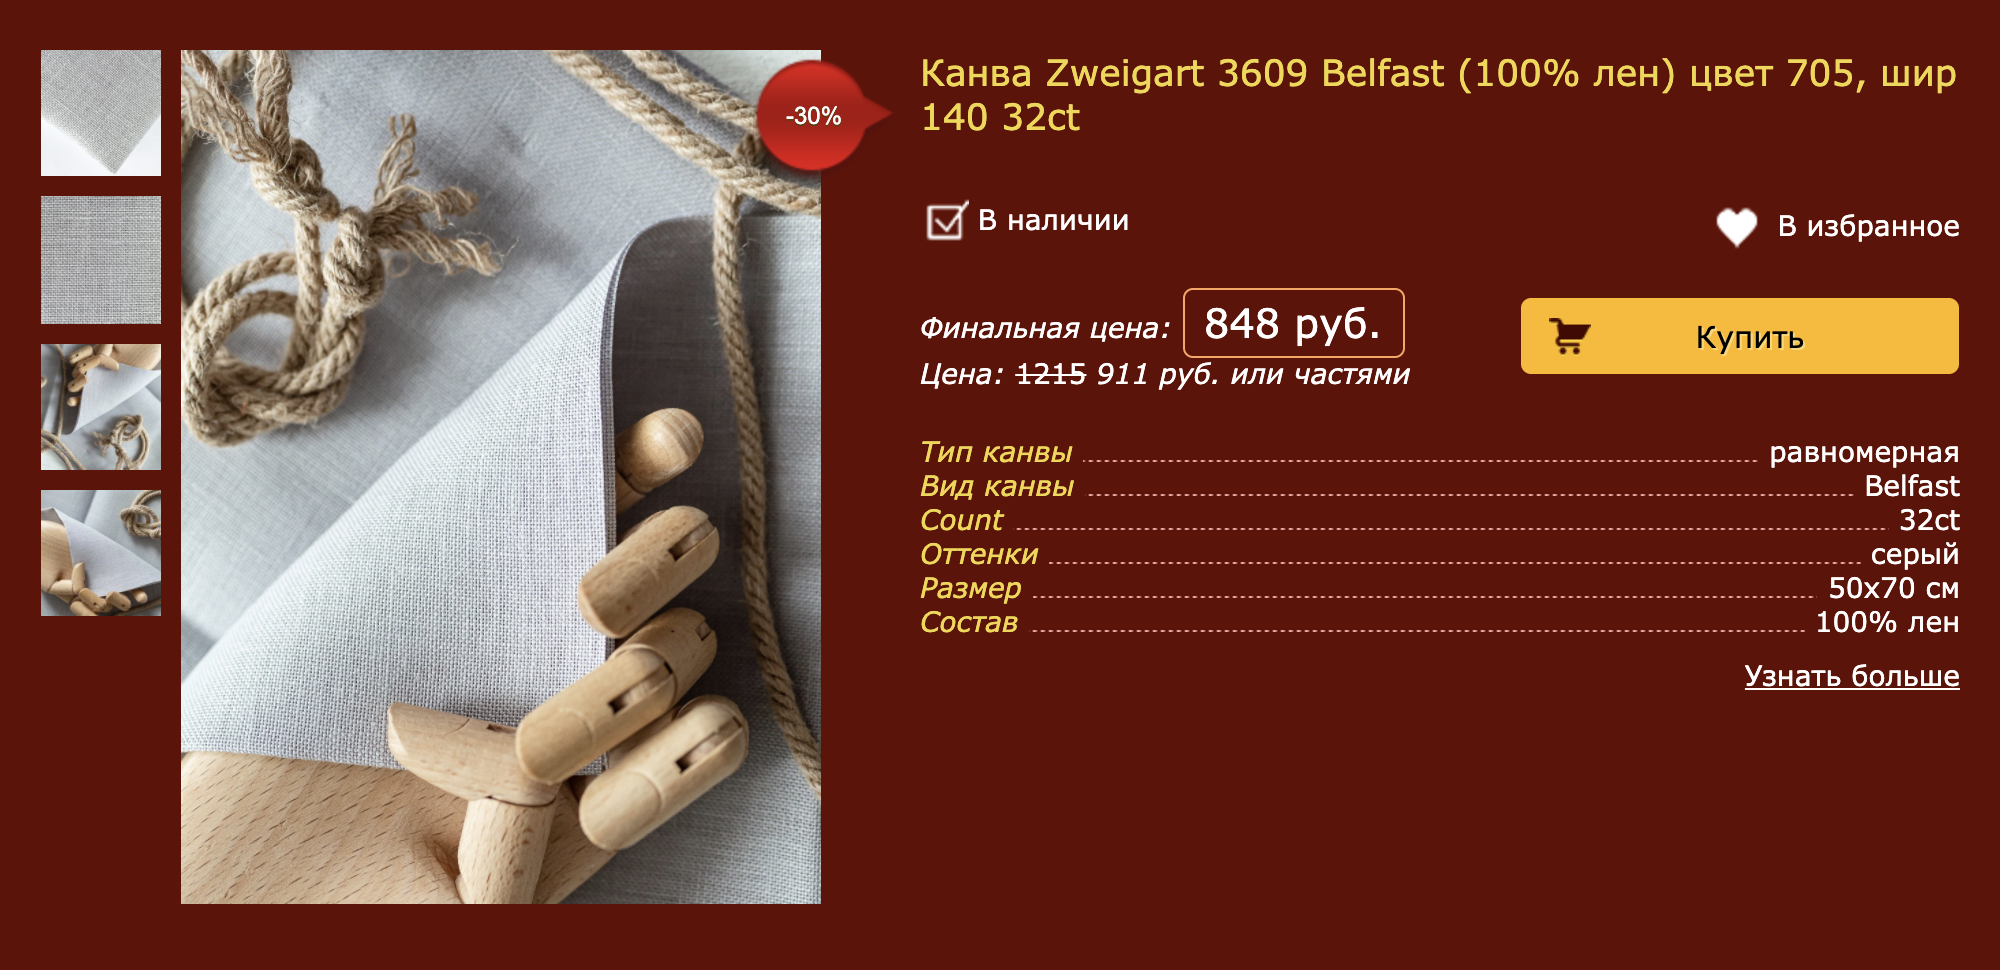 Лен Zweigart 50 × 70 см — 962 ₽ в магазине «Мир Вышивки». Это пример равномерной канвы, вышивать на такой немного сложнее